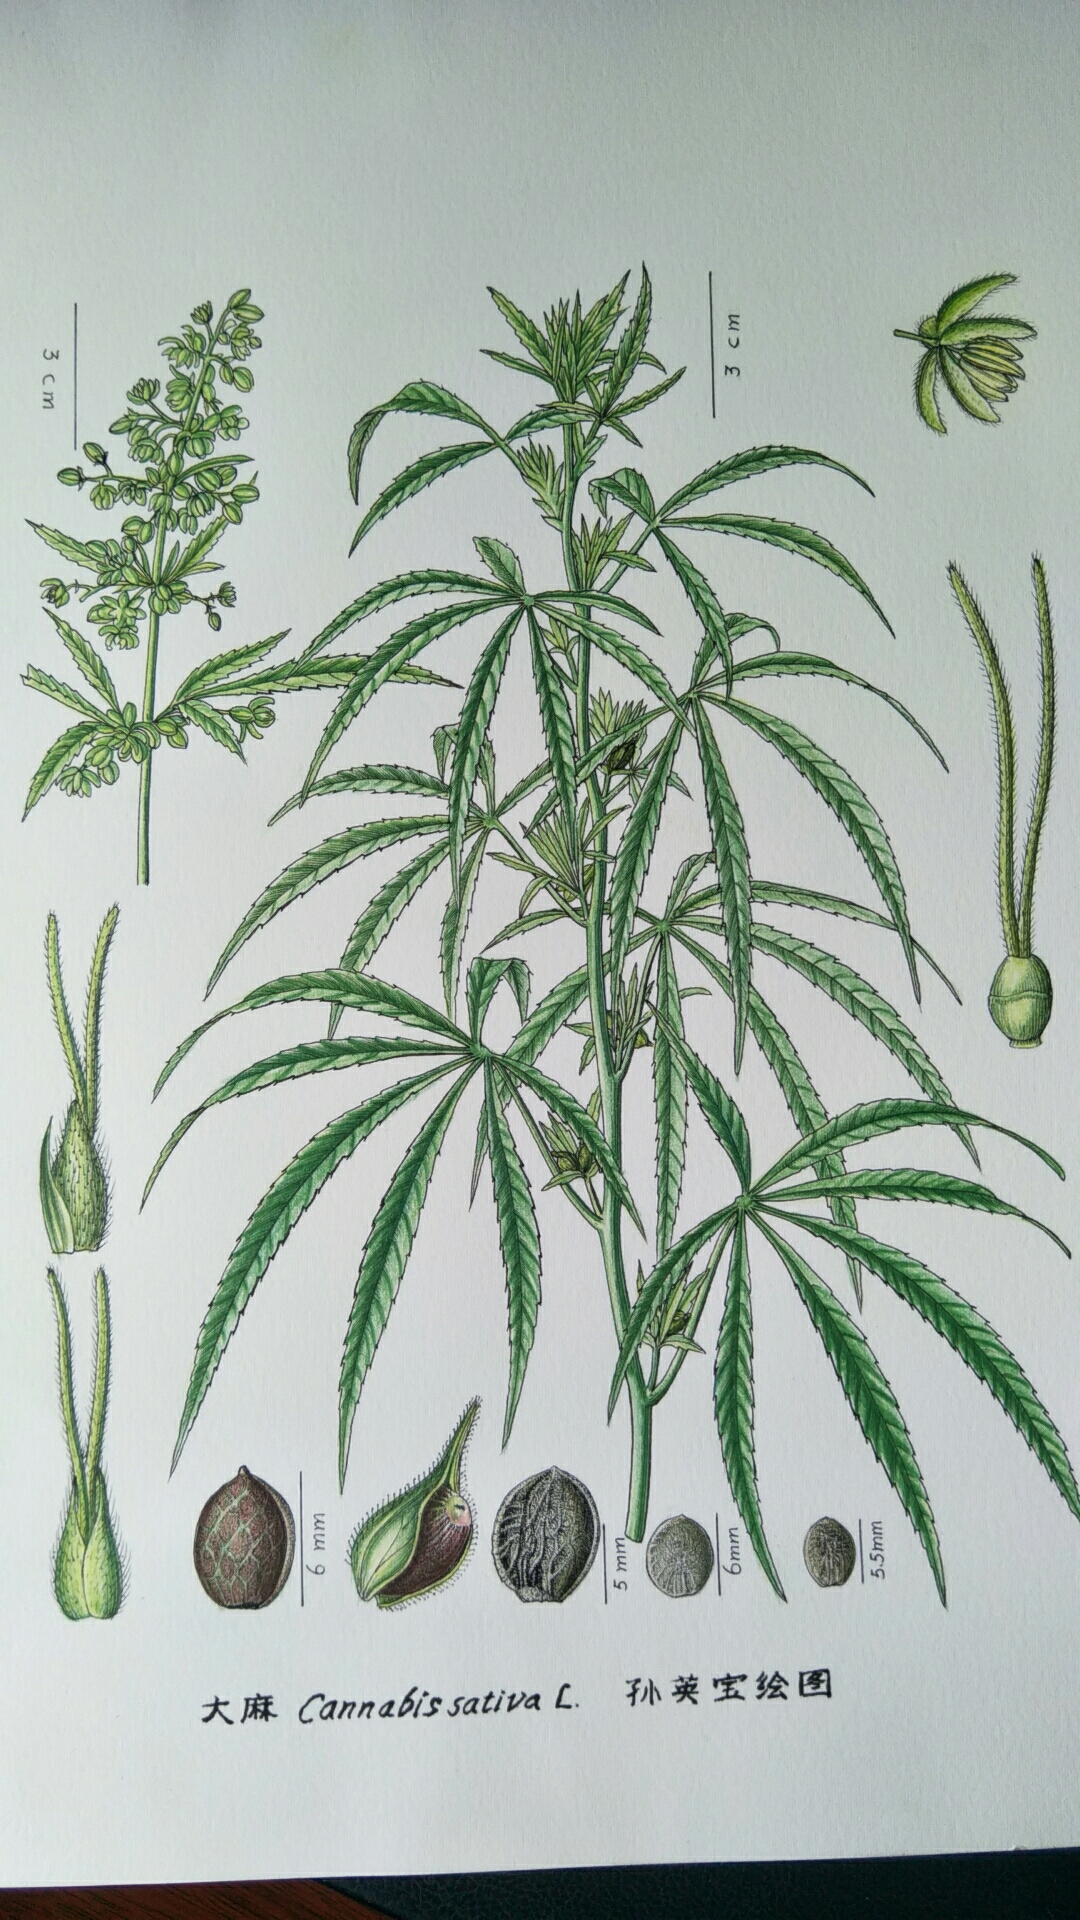 大麻(印度草)